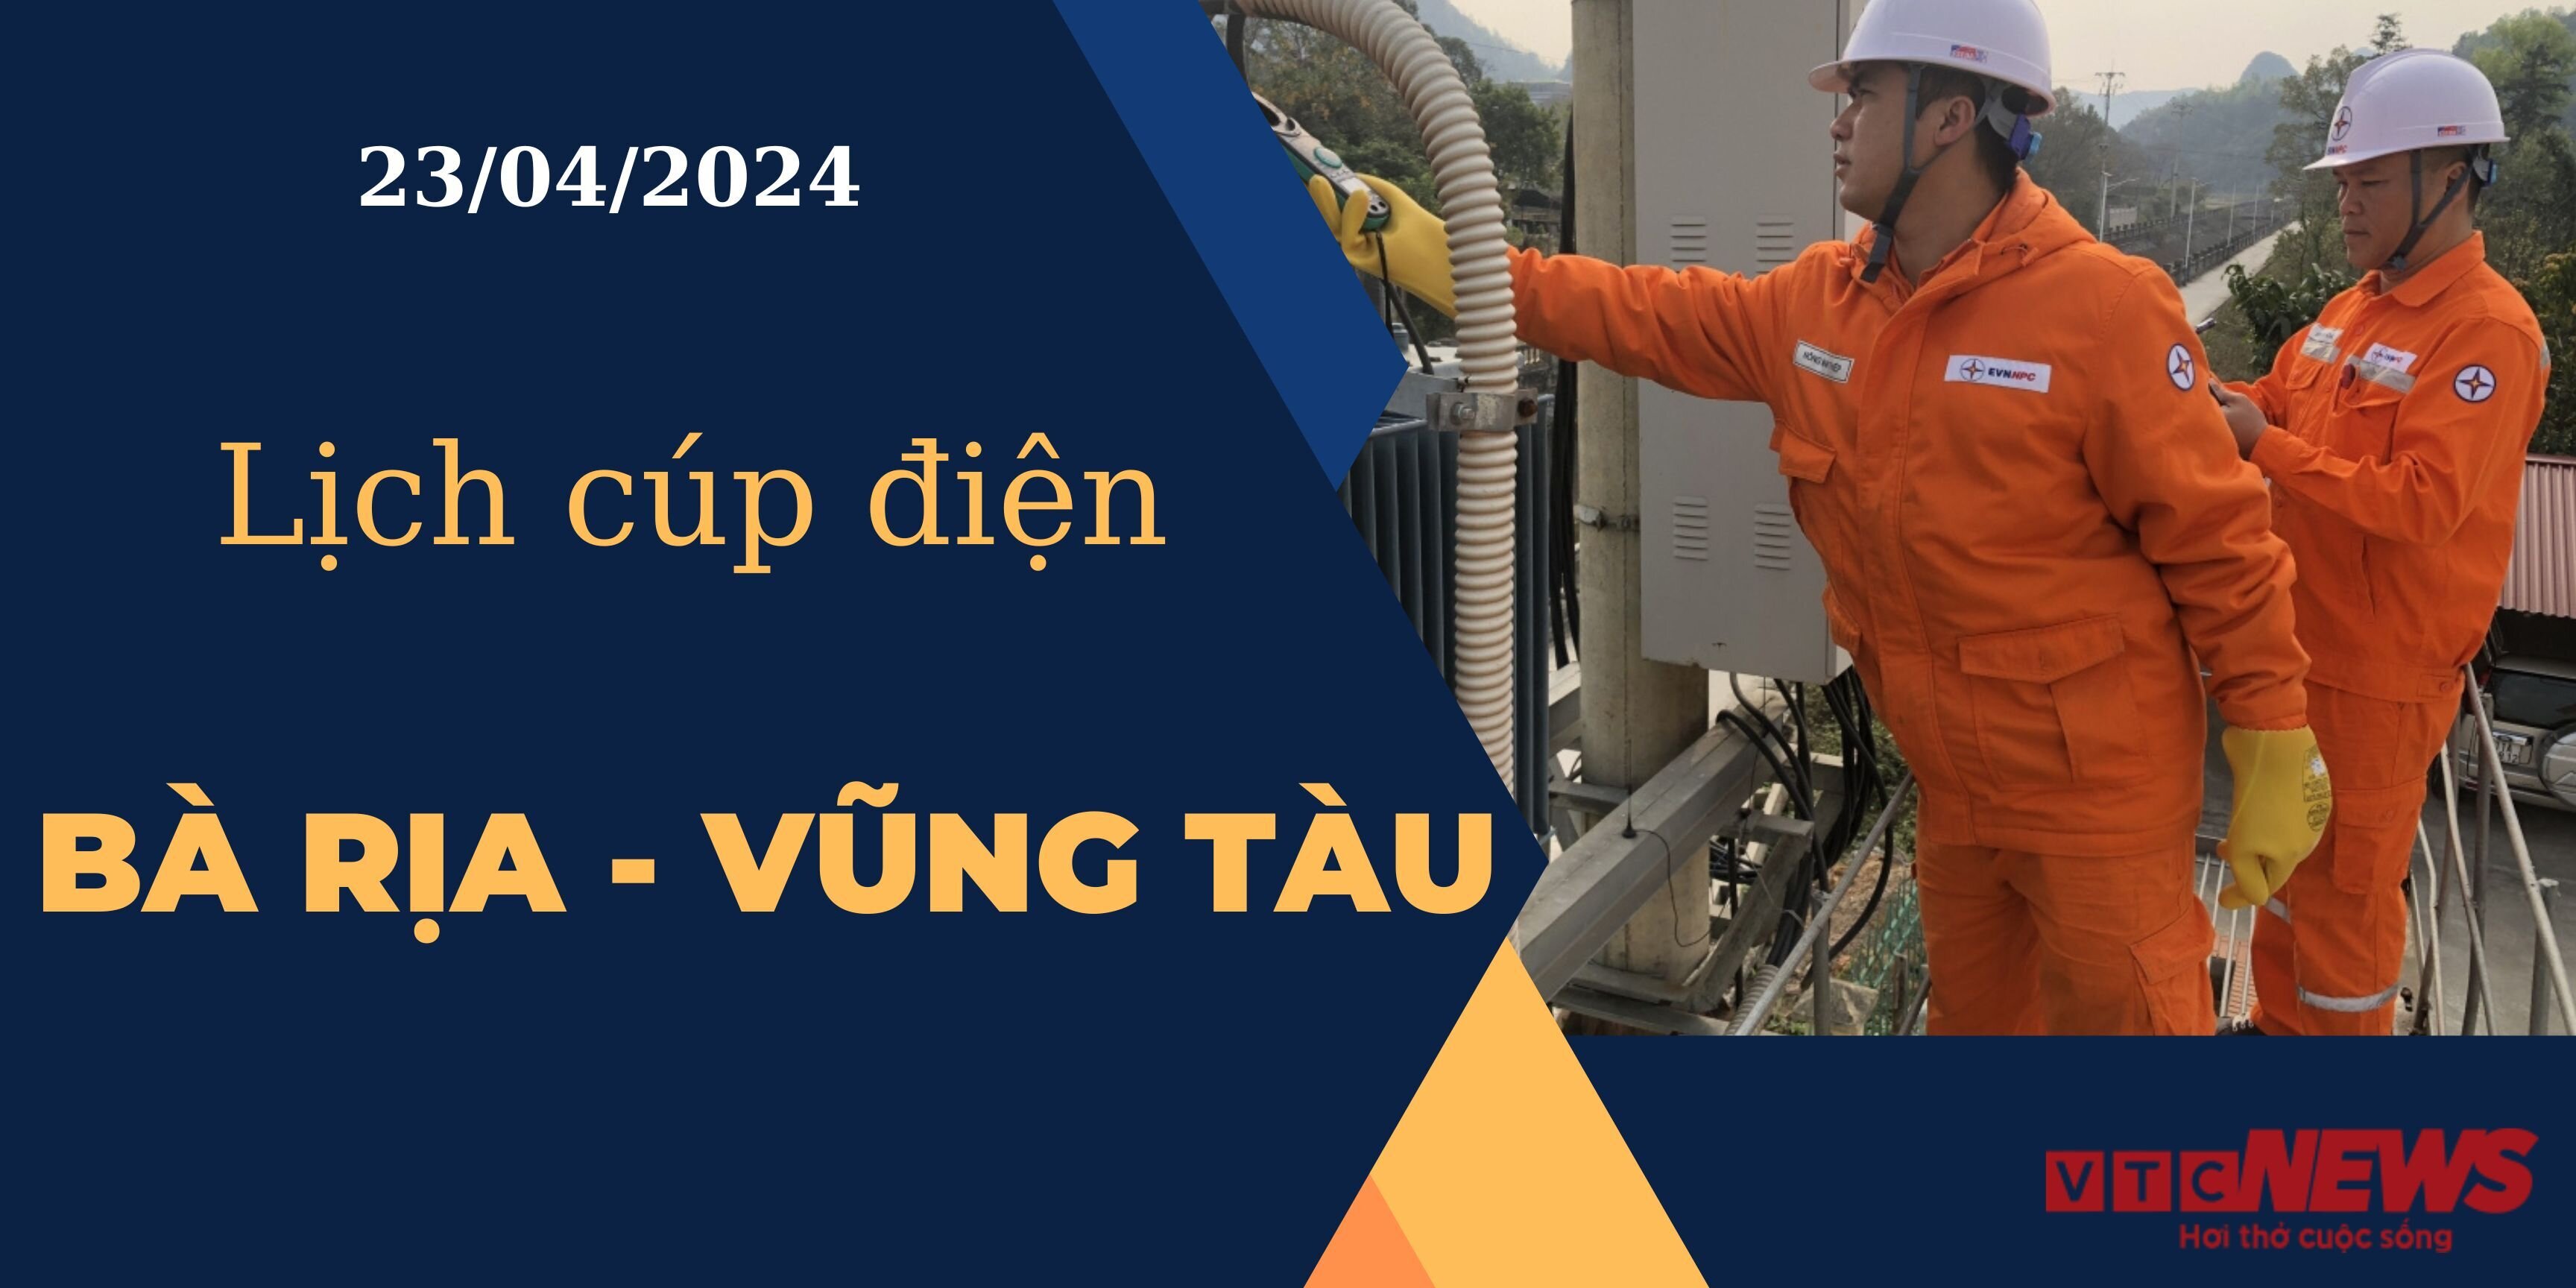 Lịch cúp điện hôm nay ngày 23/04/2024 tại Bà Rịa - Vũng Tàu